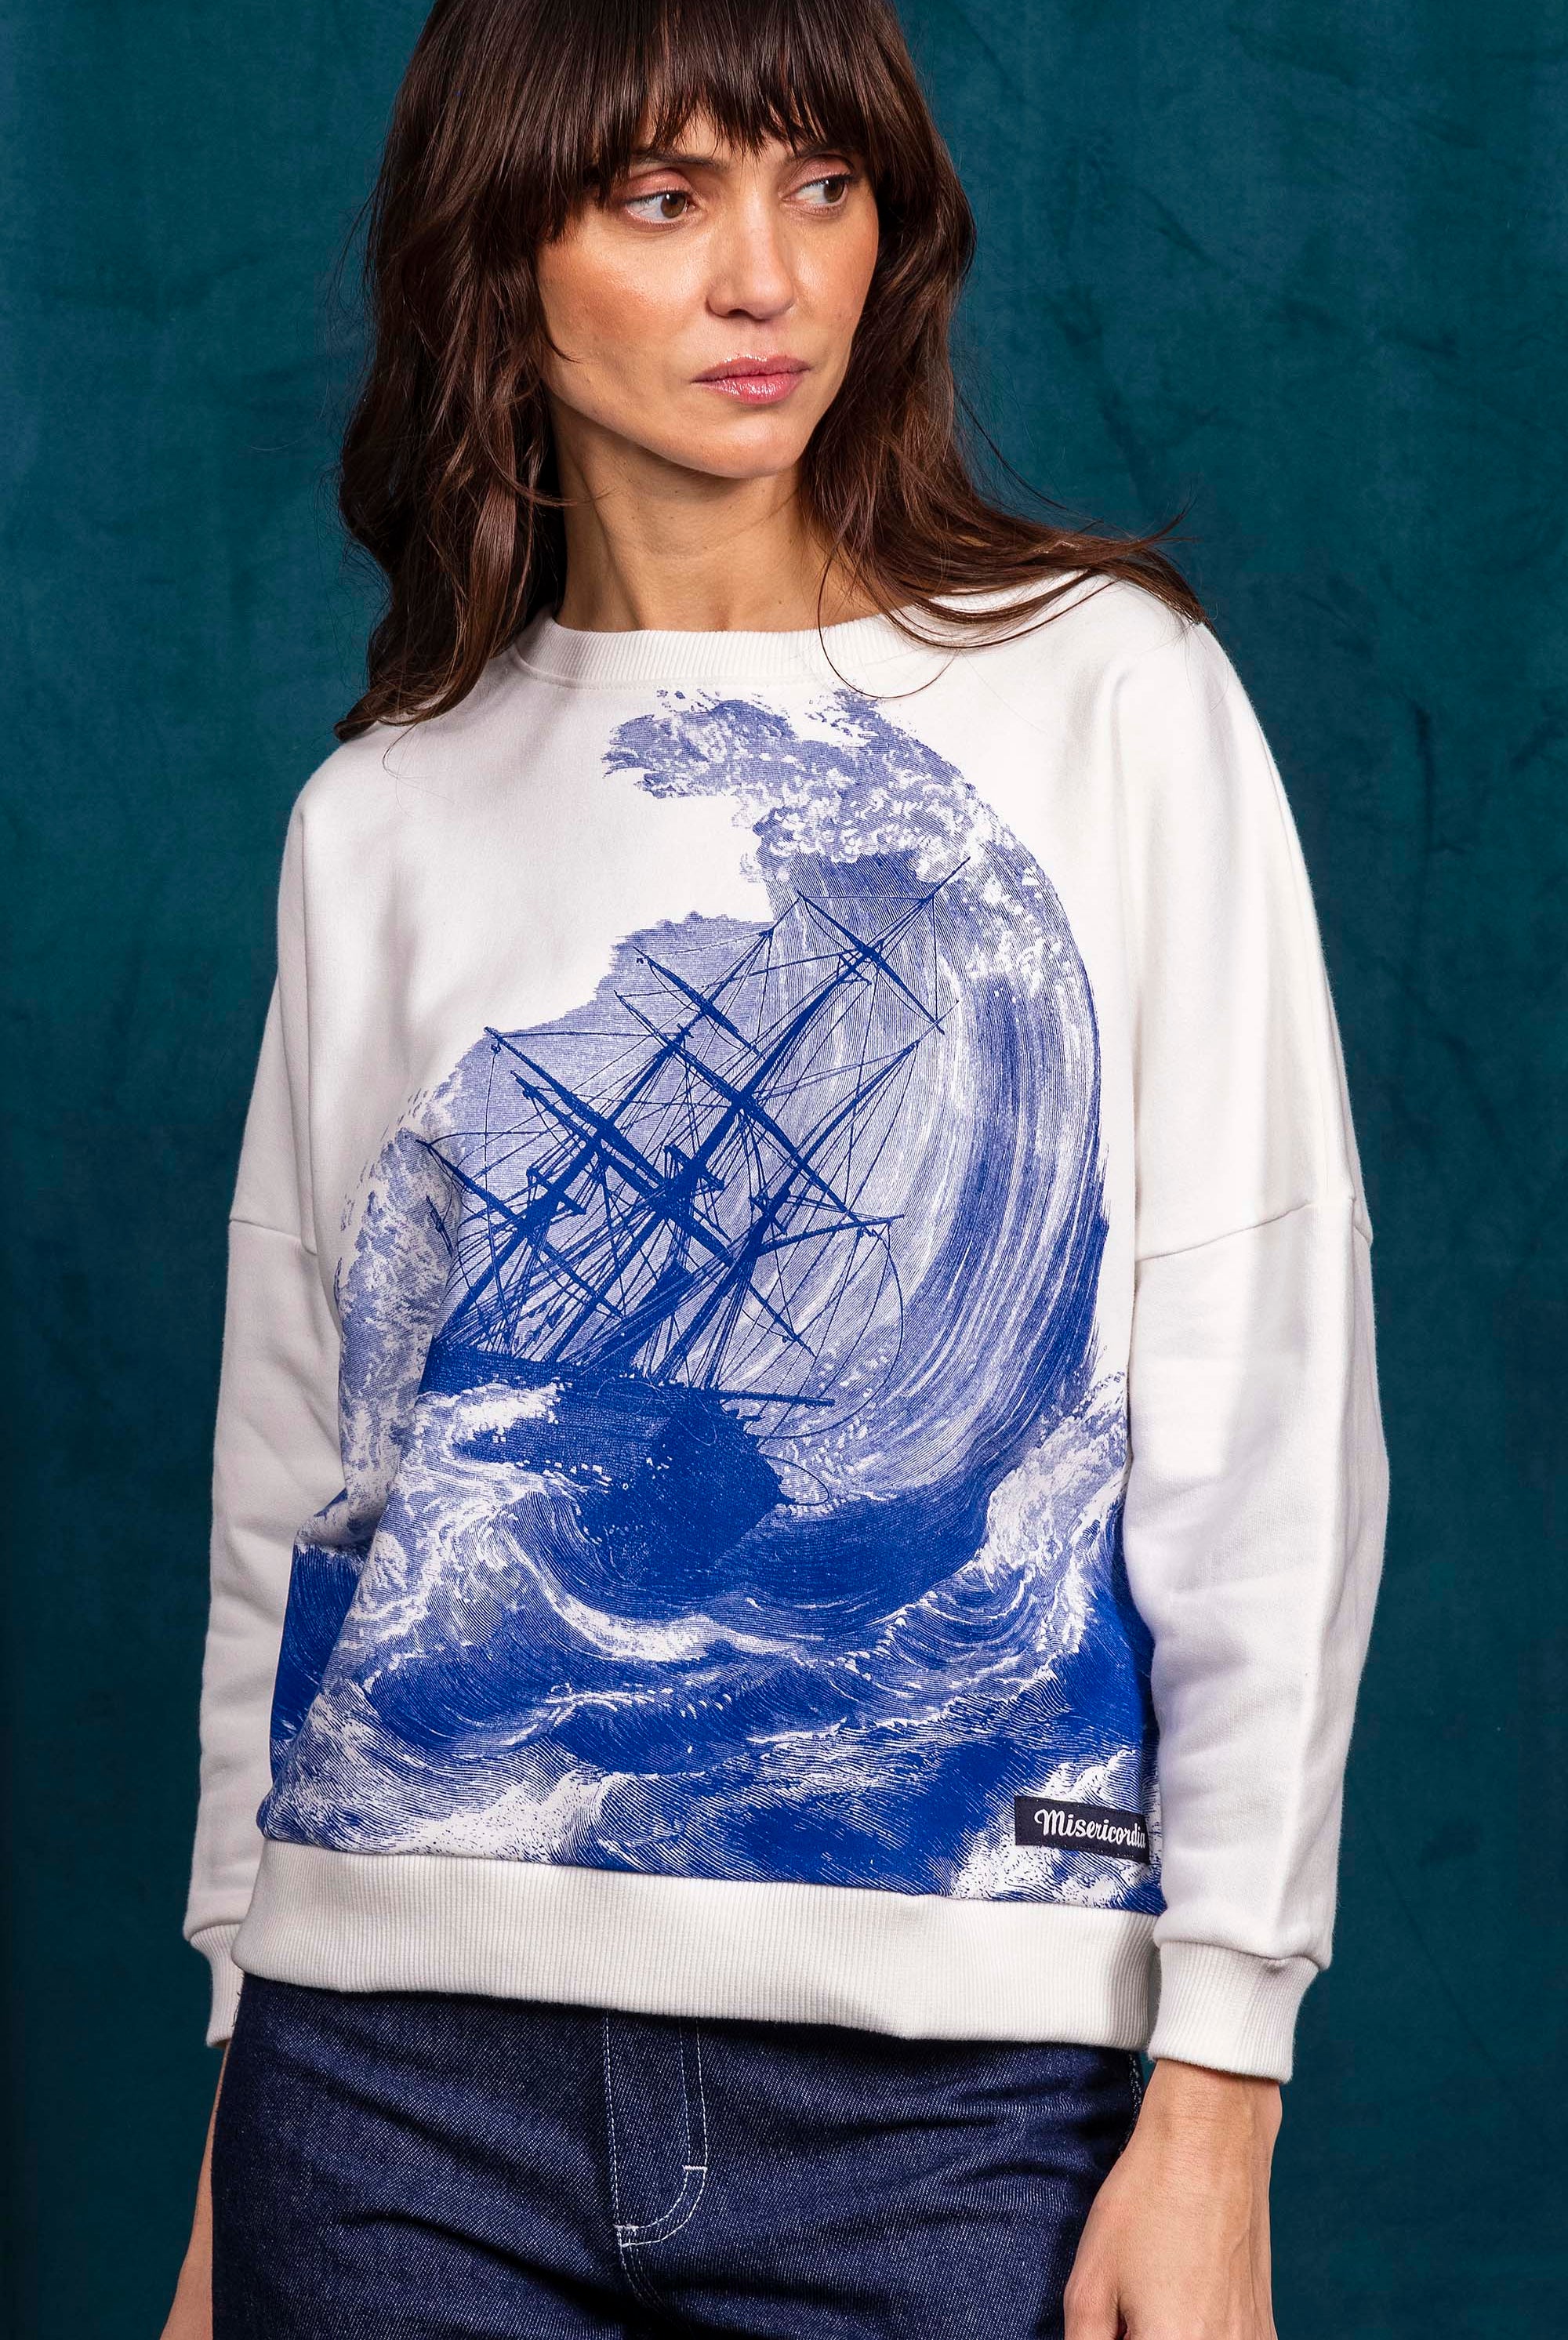 Sweatshirt Contracorriente Rescate Écru sweatshirt femme, pièce basique et vêtement cocooning du quotidien